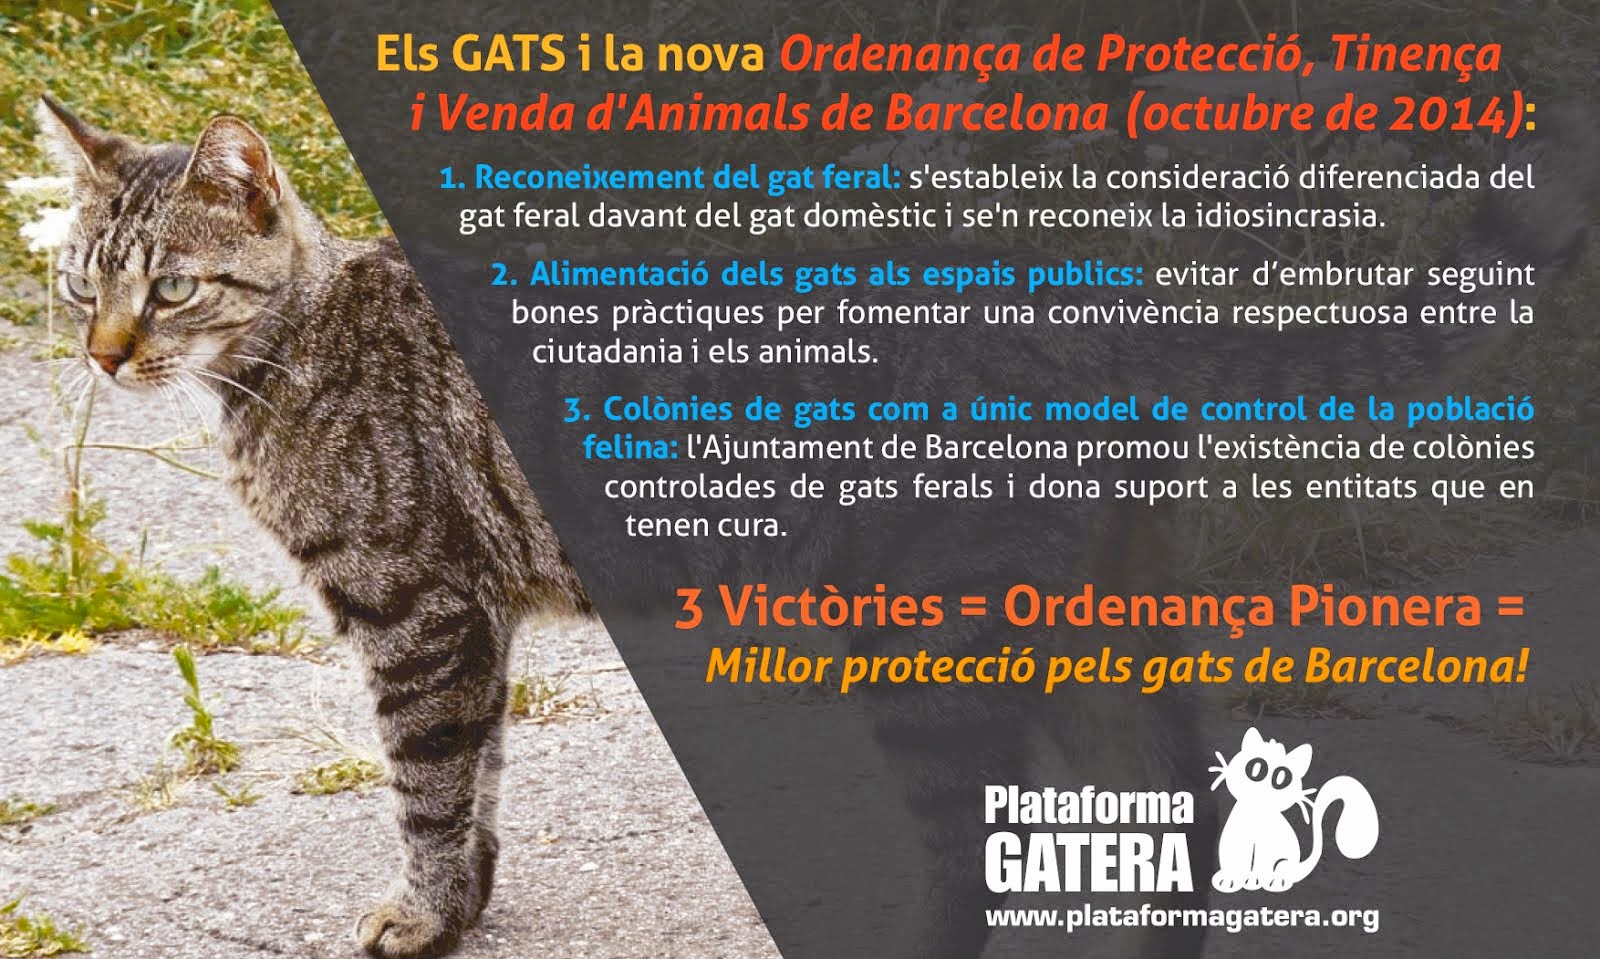 Nova Ordenança de Protecció, Tinença i Venda d'Animals a Barcelona